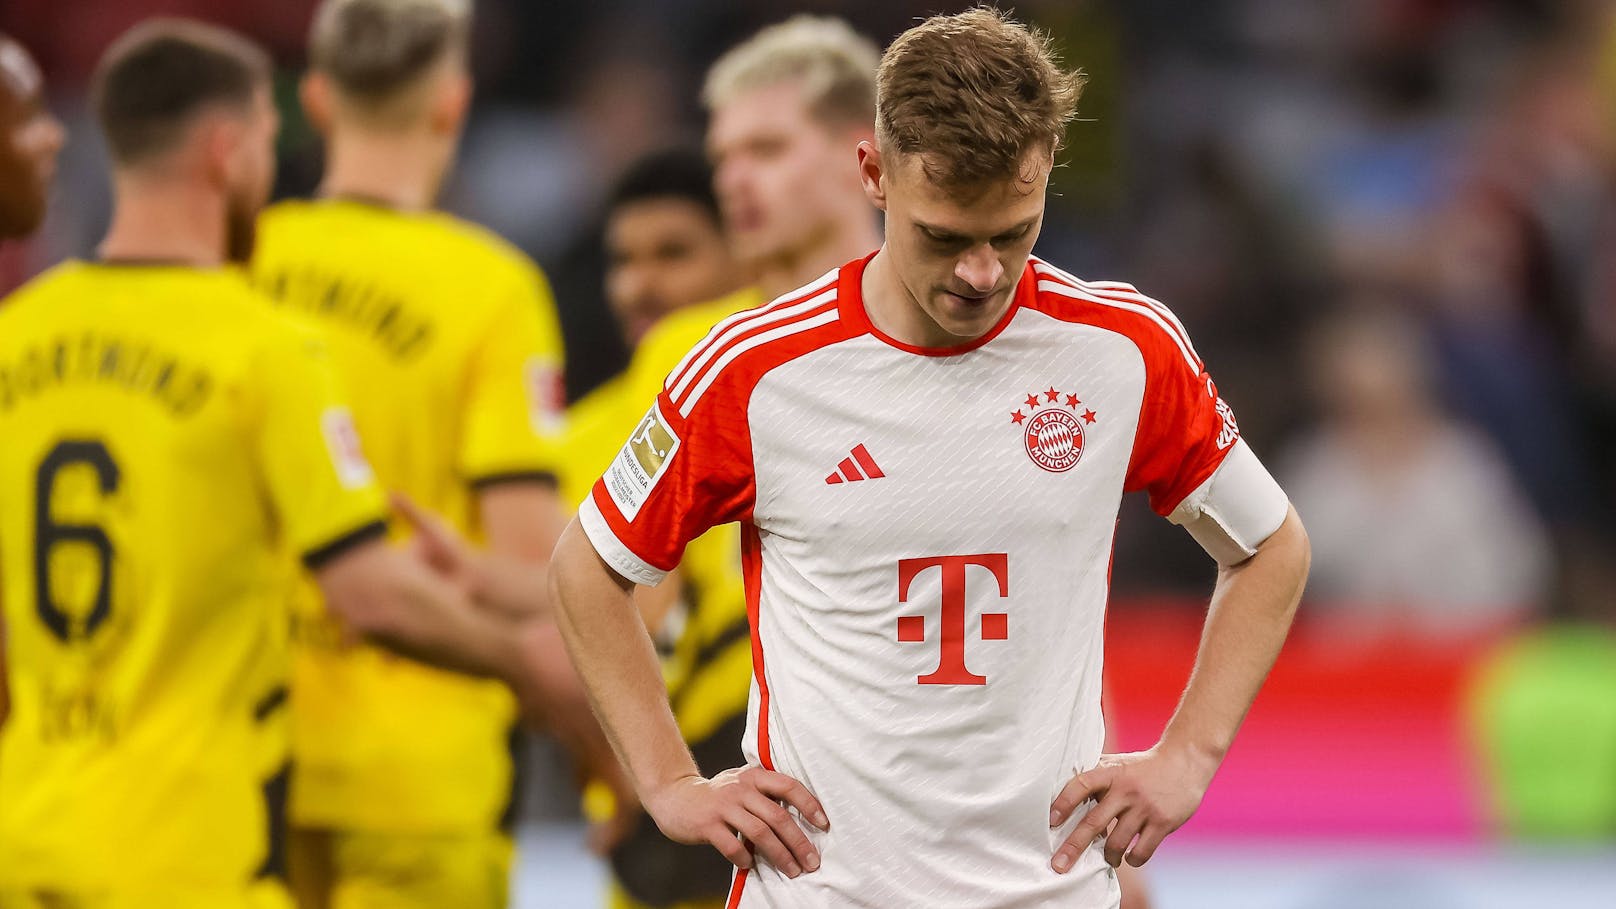 Tränen bei Bayern-Star: "Völlig unverständlich!"